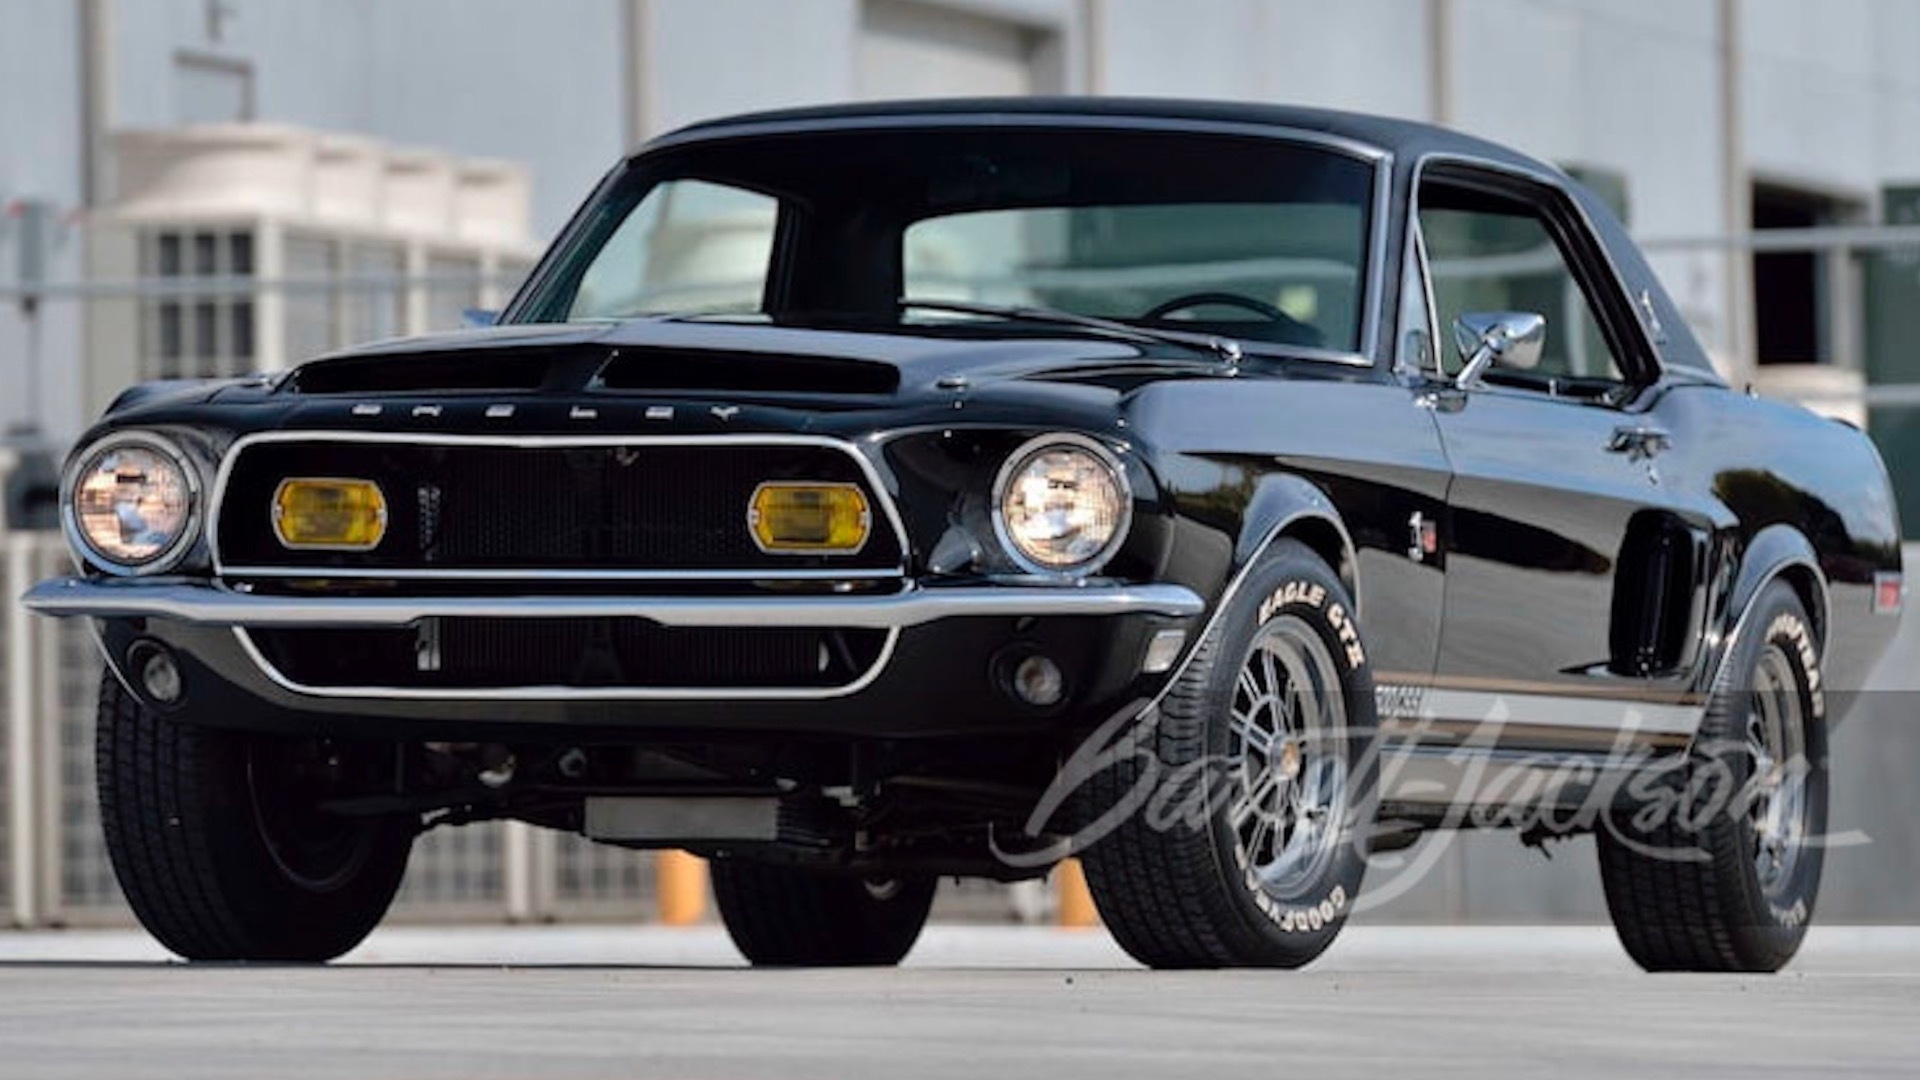 1968 Ford Mustang Black Hornet (photo via Barrett-Jackson)